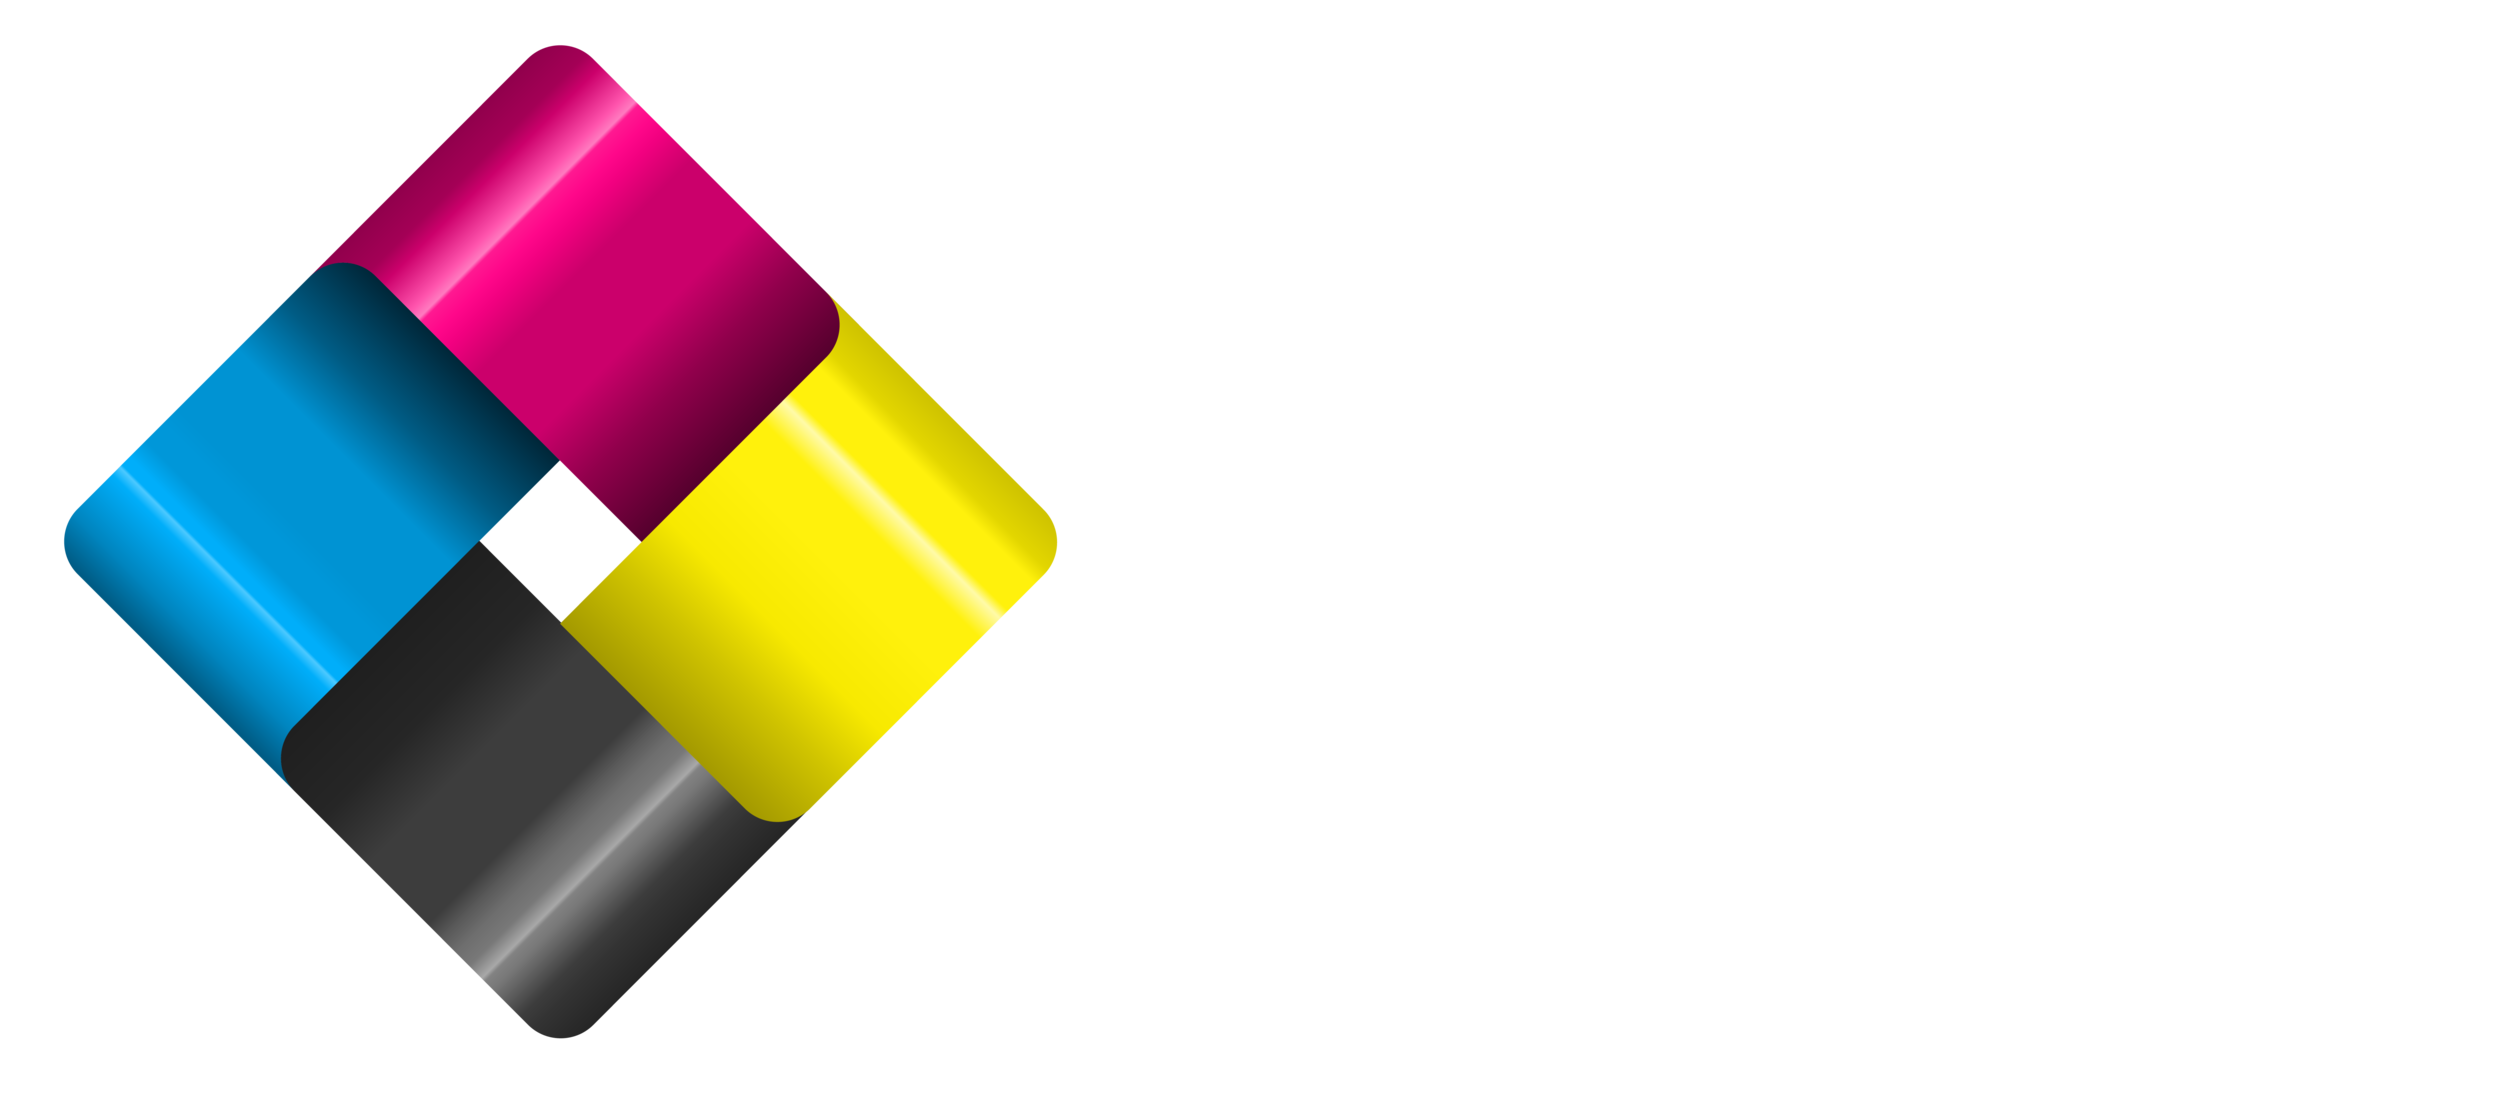 Premier Labels